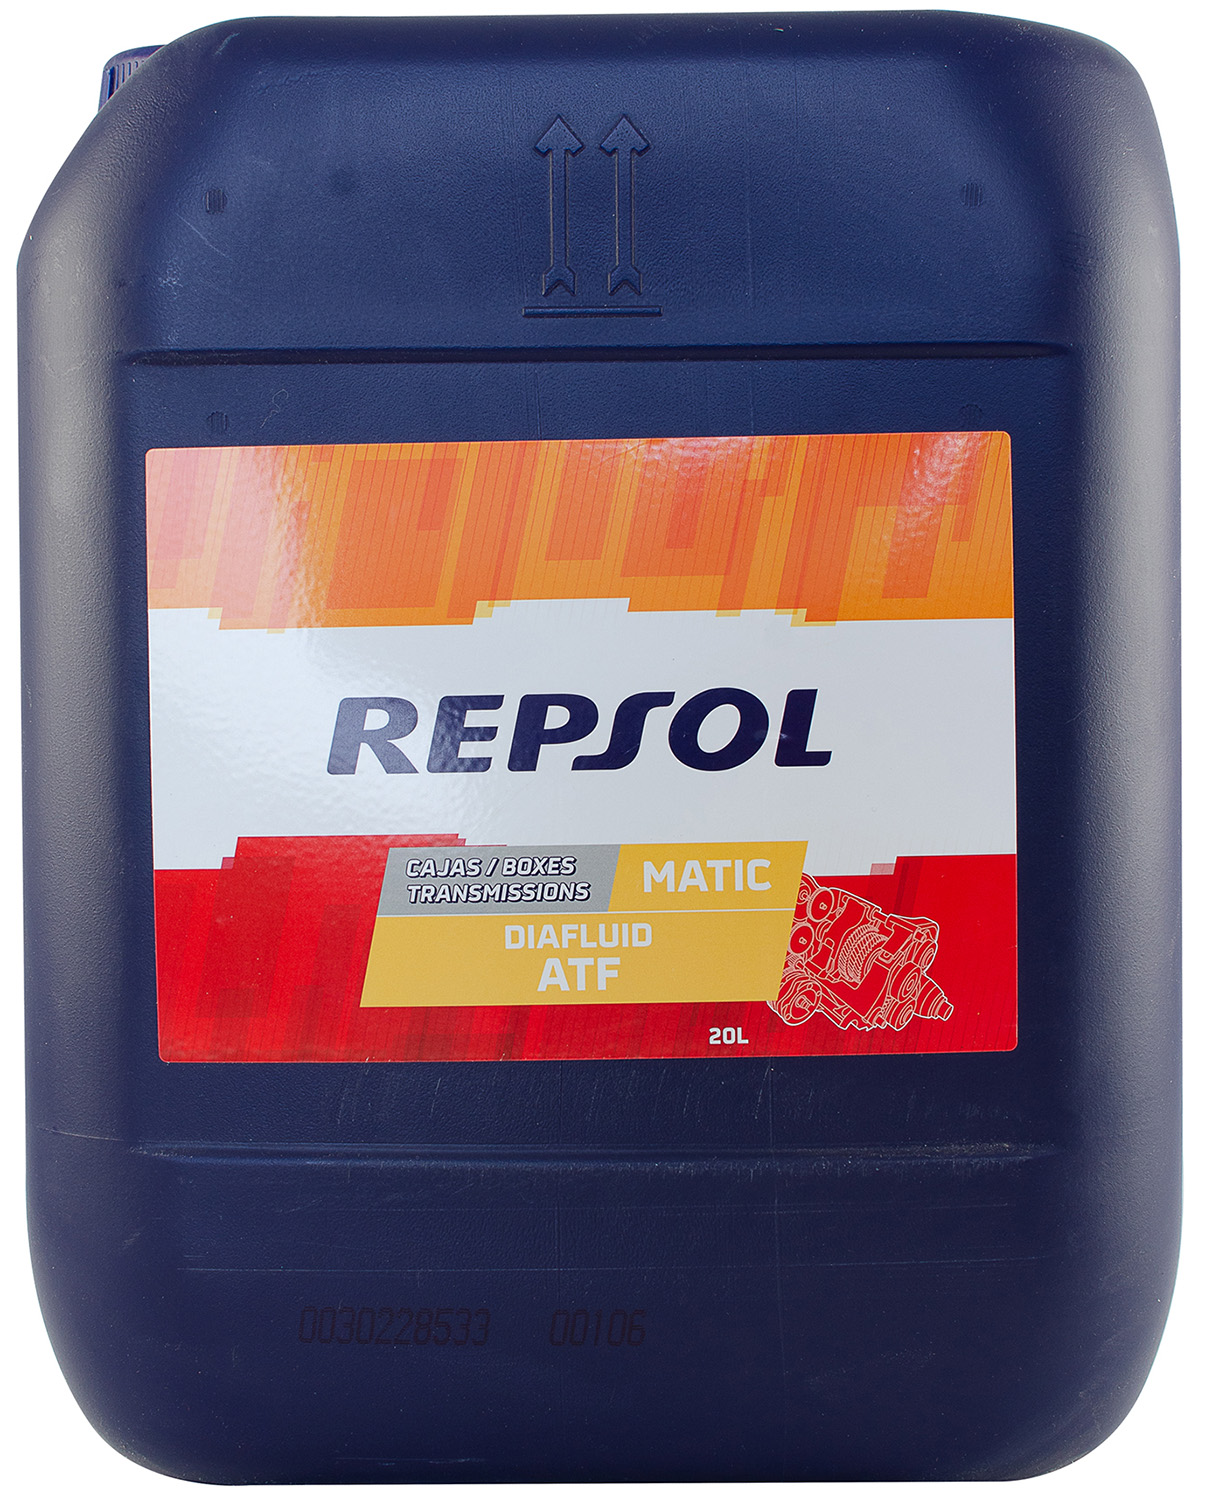 Моторное масло Repsol Elite 50501 TDI 5W-40 5л (RP135X55) купить